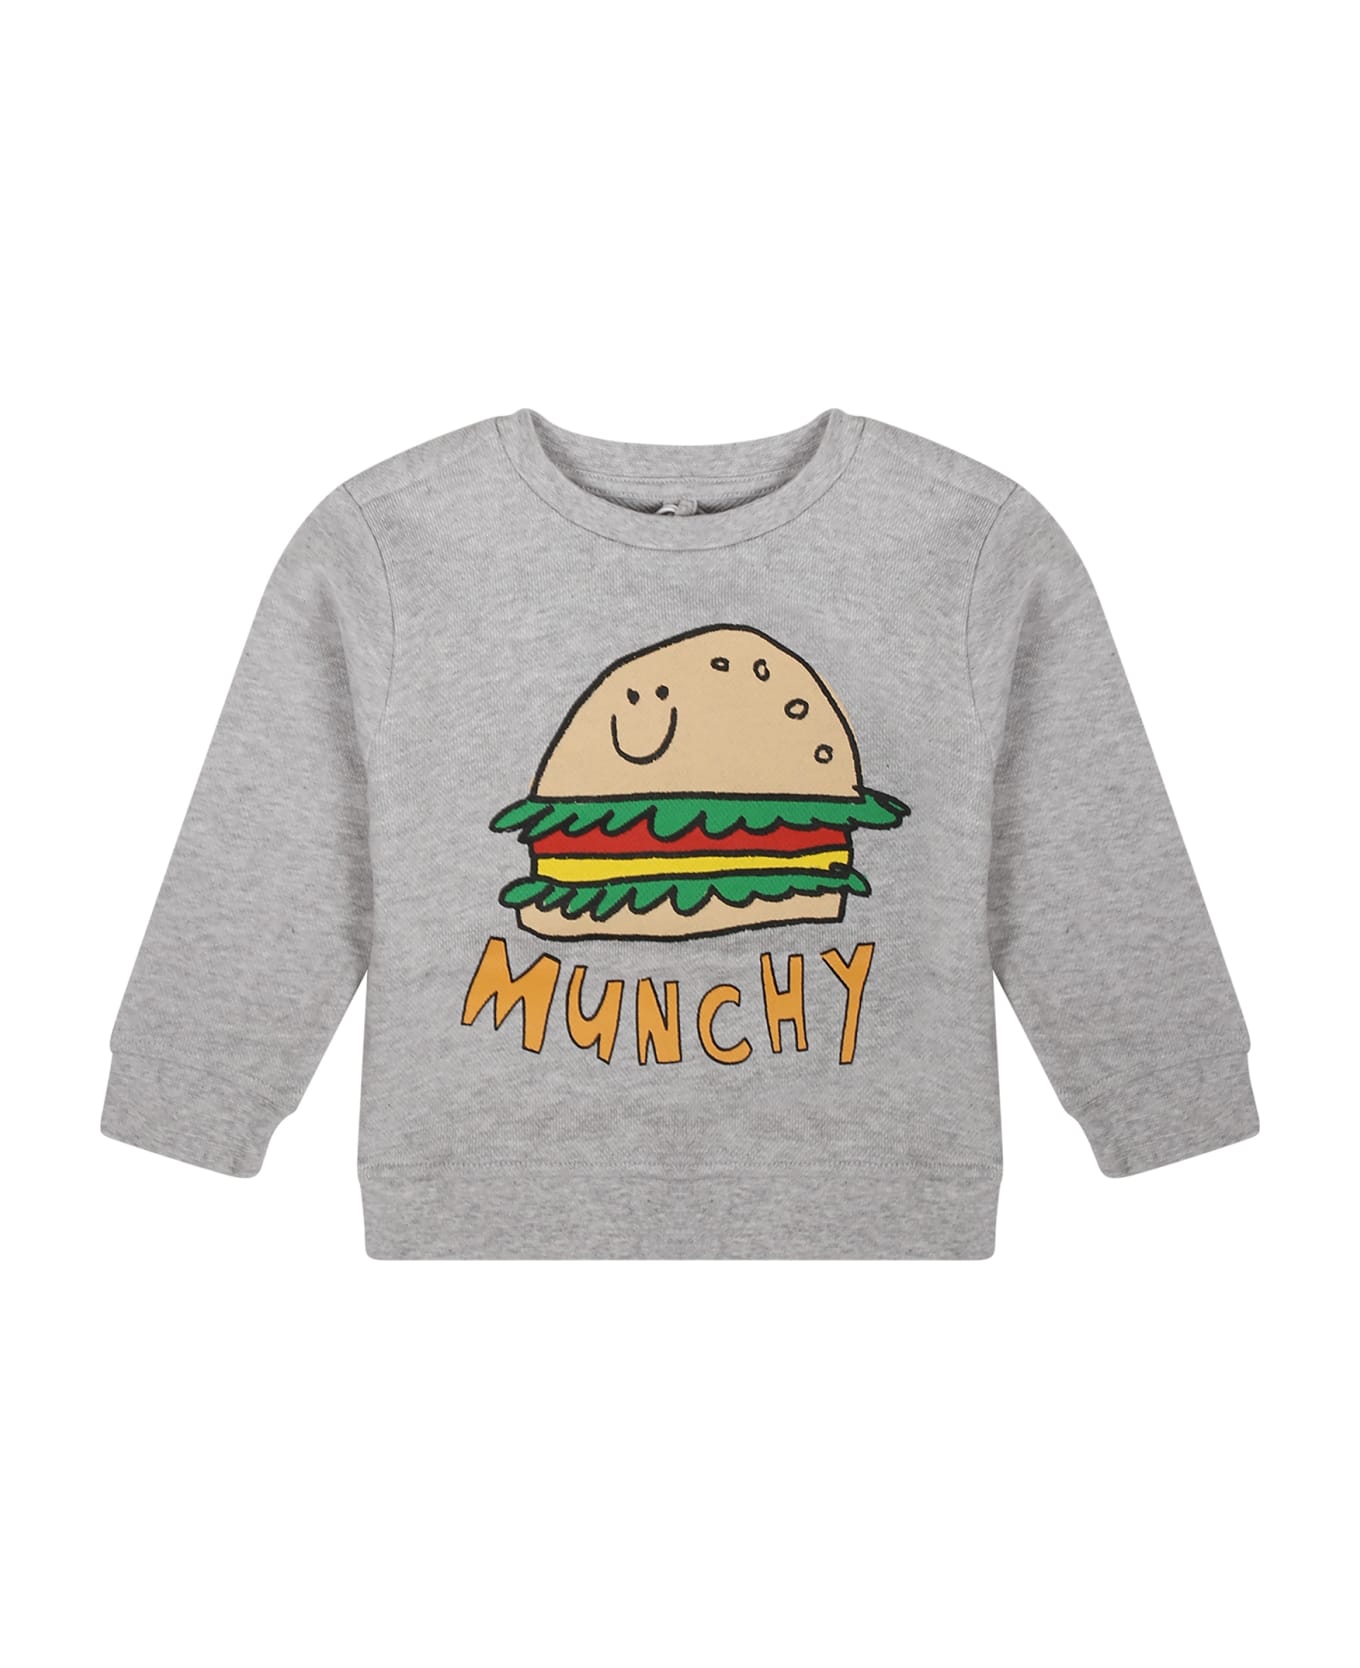 Stella McCartney Kids Grey Sweatshirt For Baby Boy With Hamburger Print - Grey ニットウェア＆スウェットシャツ